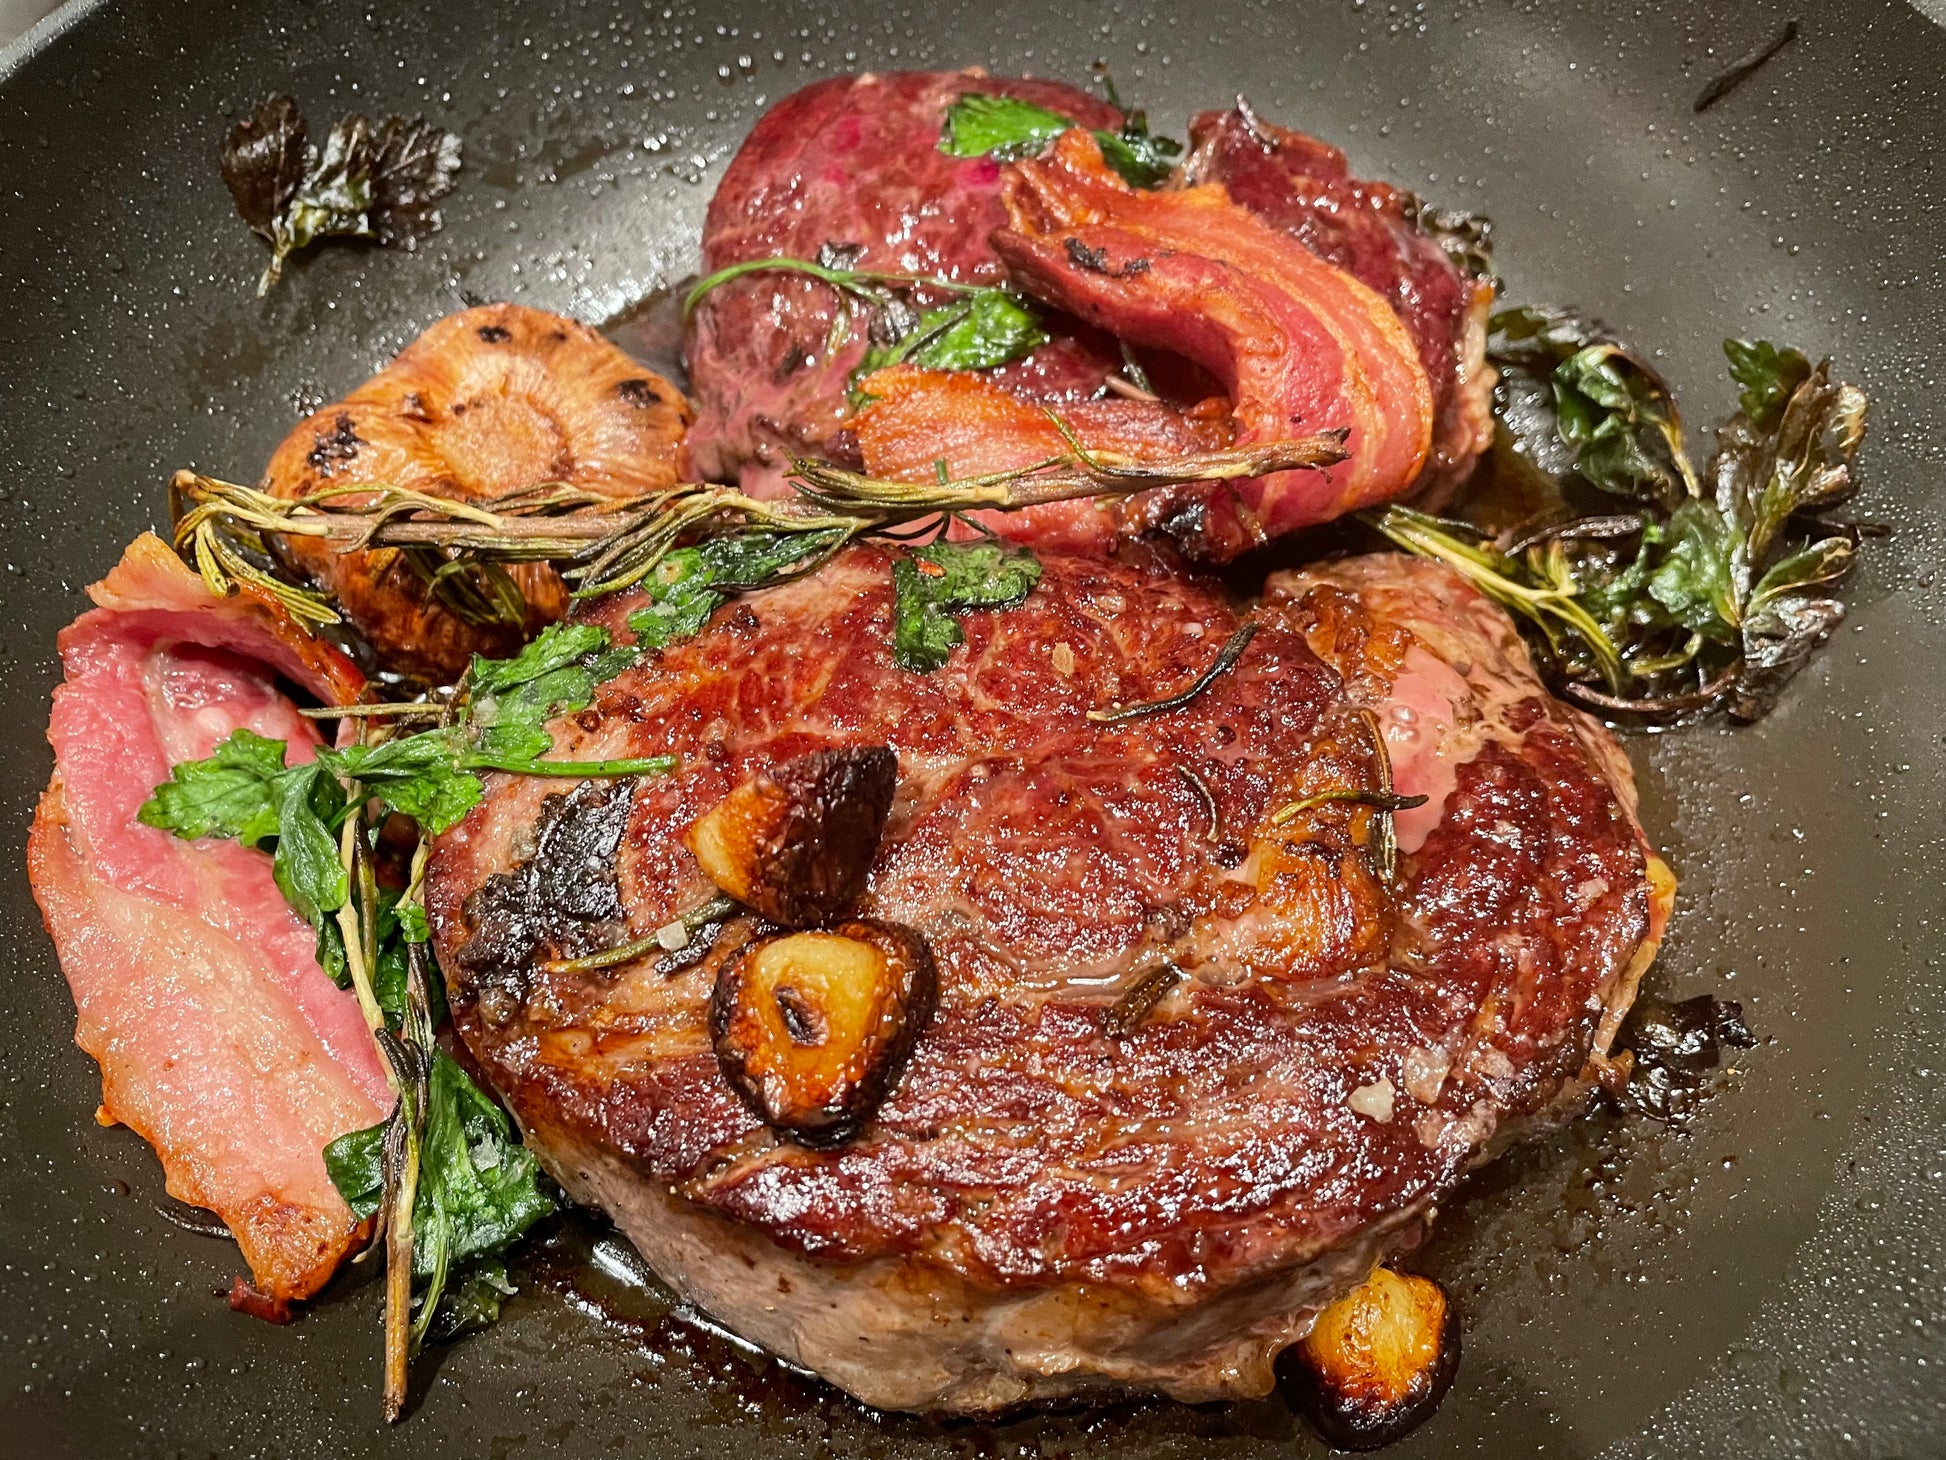 Geratenes Steak mit Speck und Knoblauch